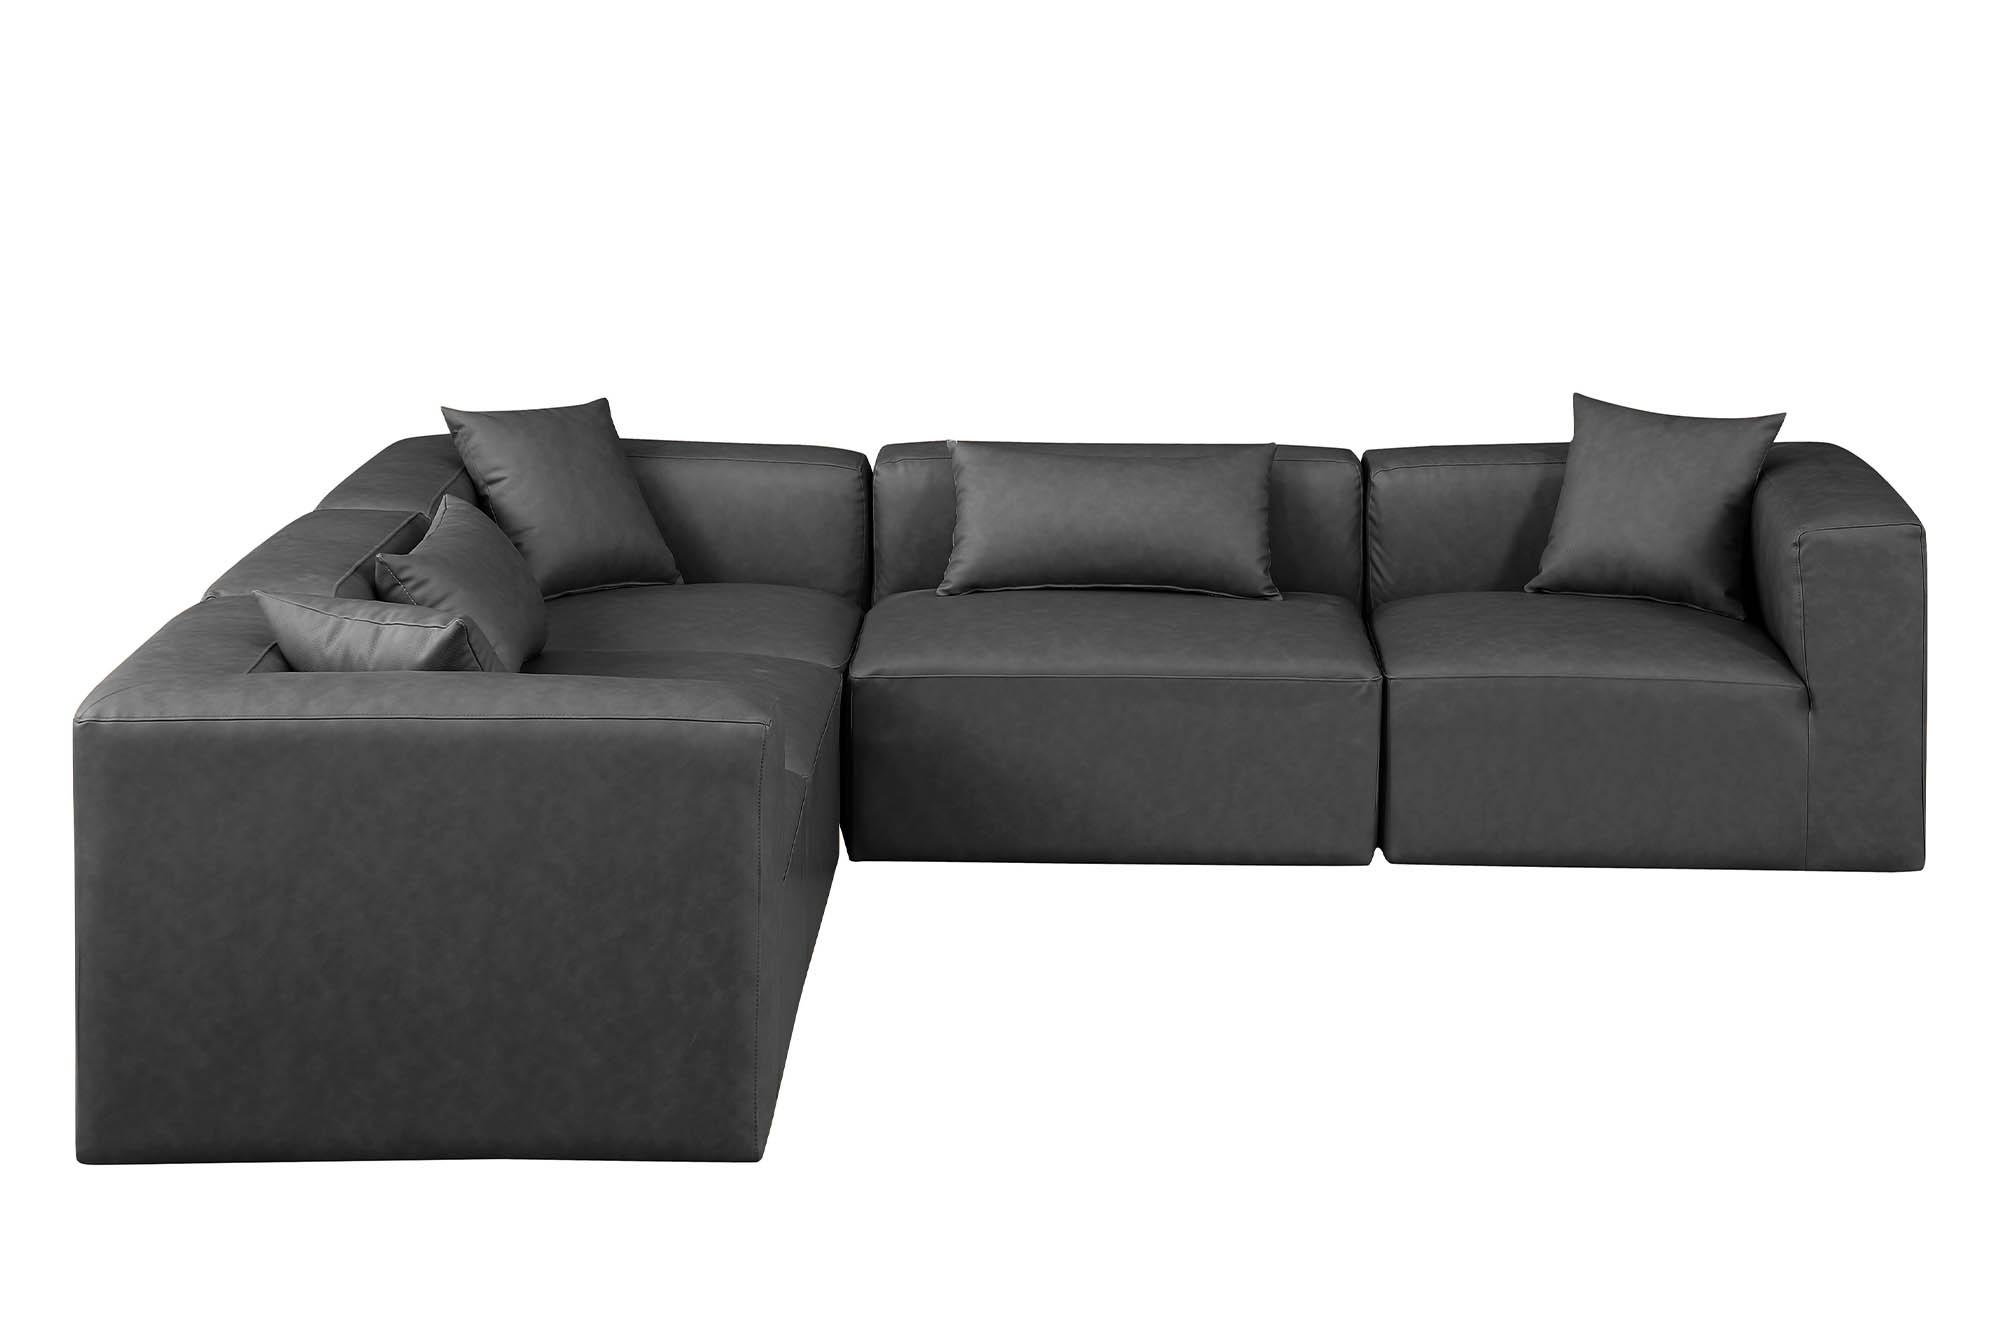 

    
Meridian Furniture CUBE 668Grey-Sec5C Modular Sectional Sofa Gray 668Grey-Sec5C
